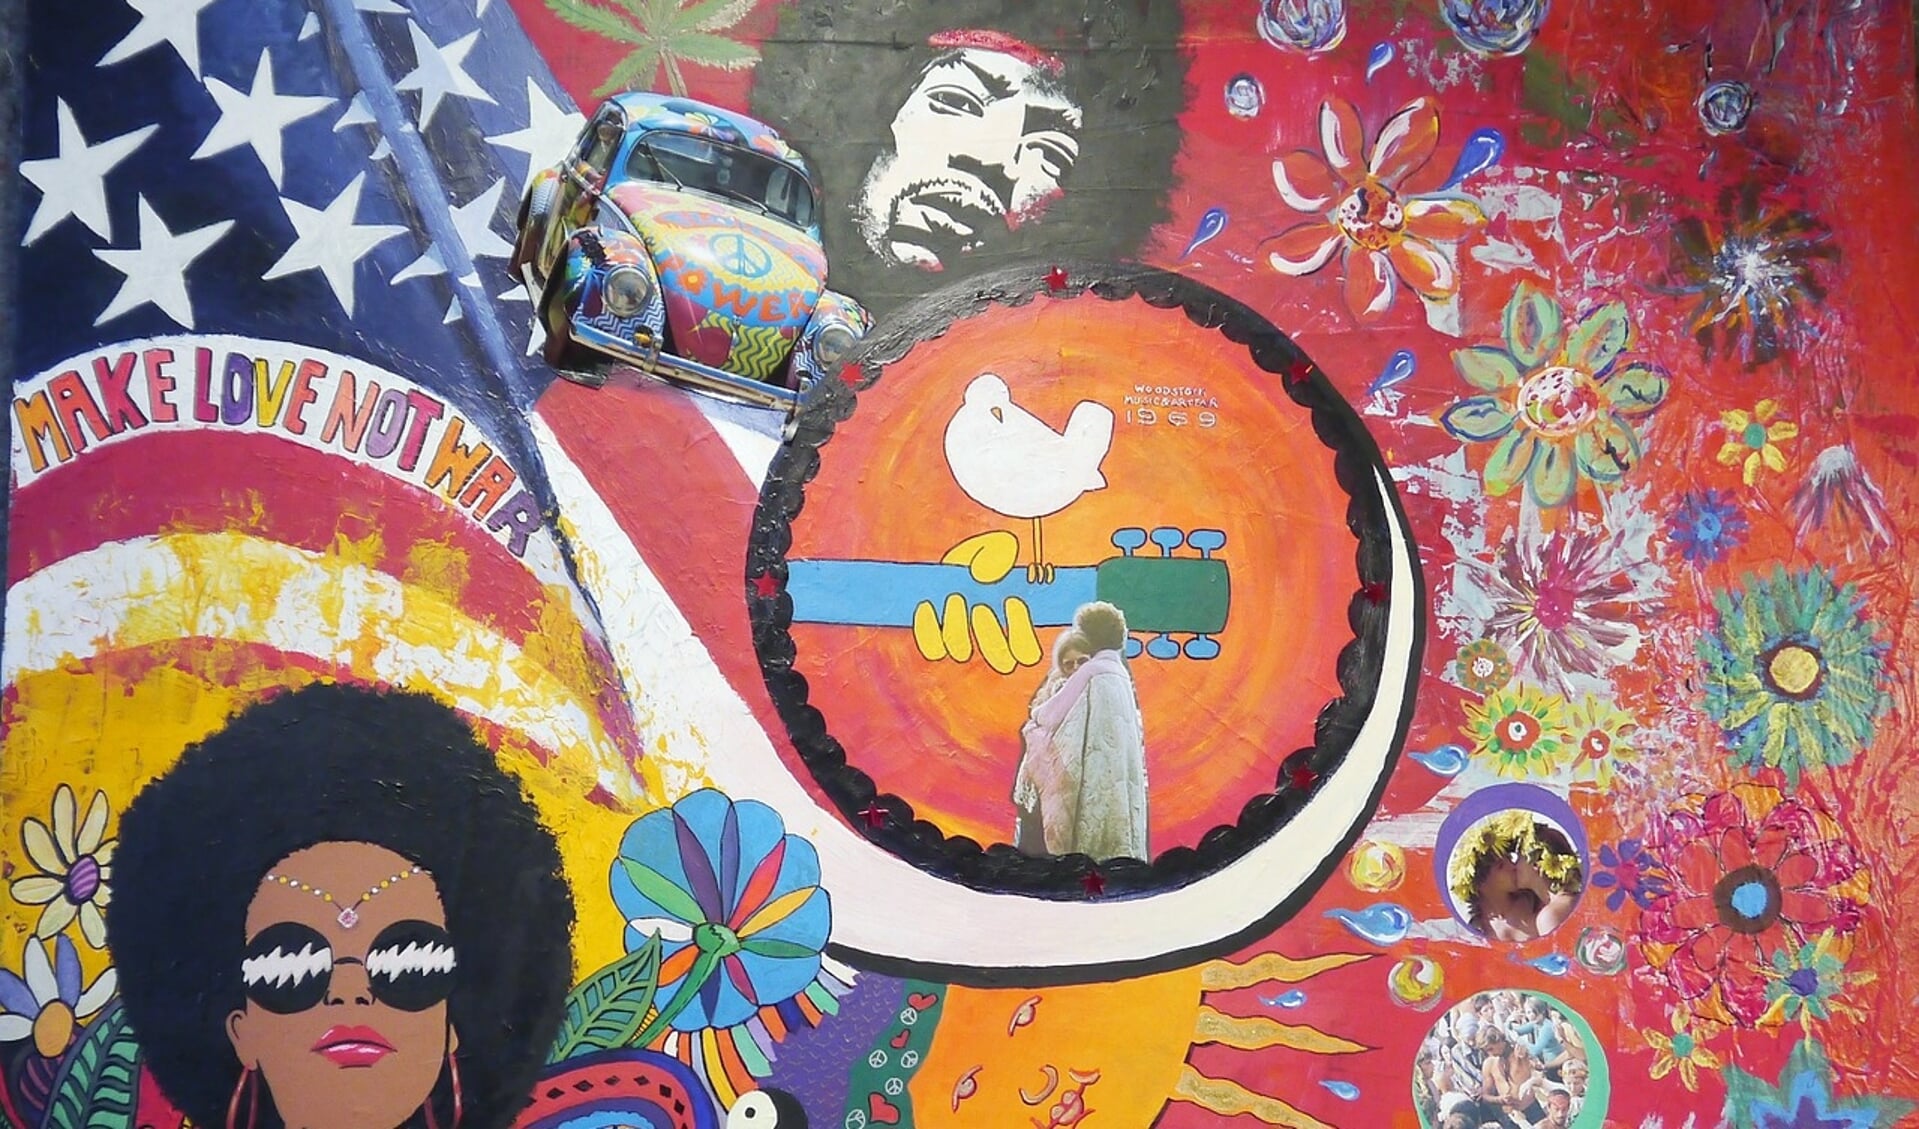 Woodstock stond voor veel meer dan alleen muziek. 